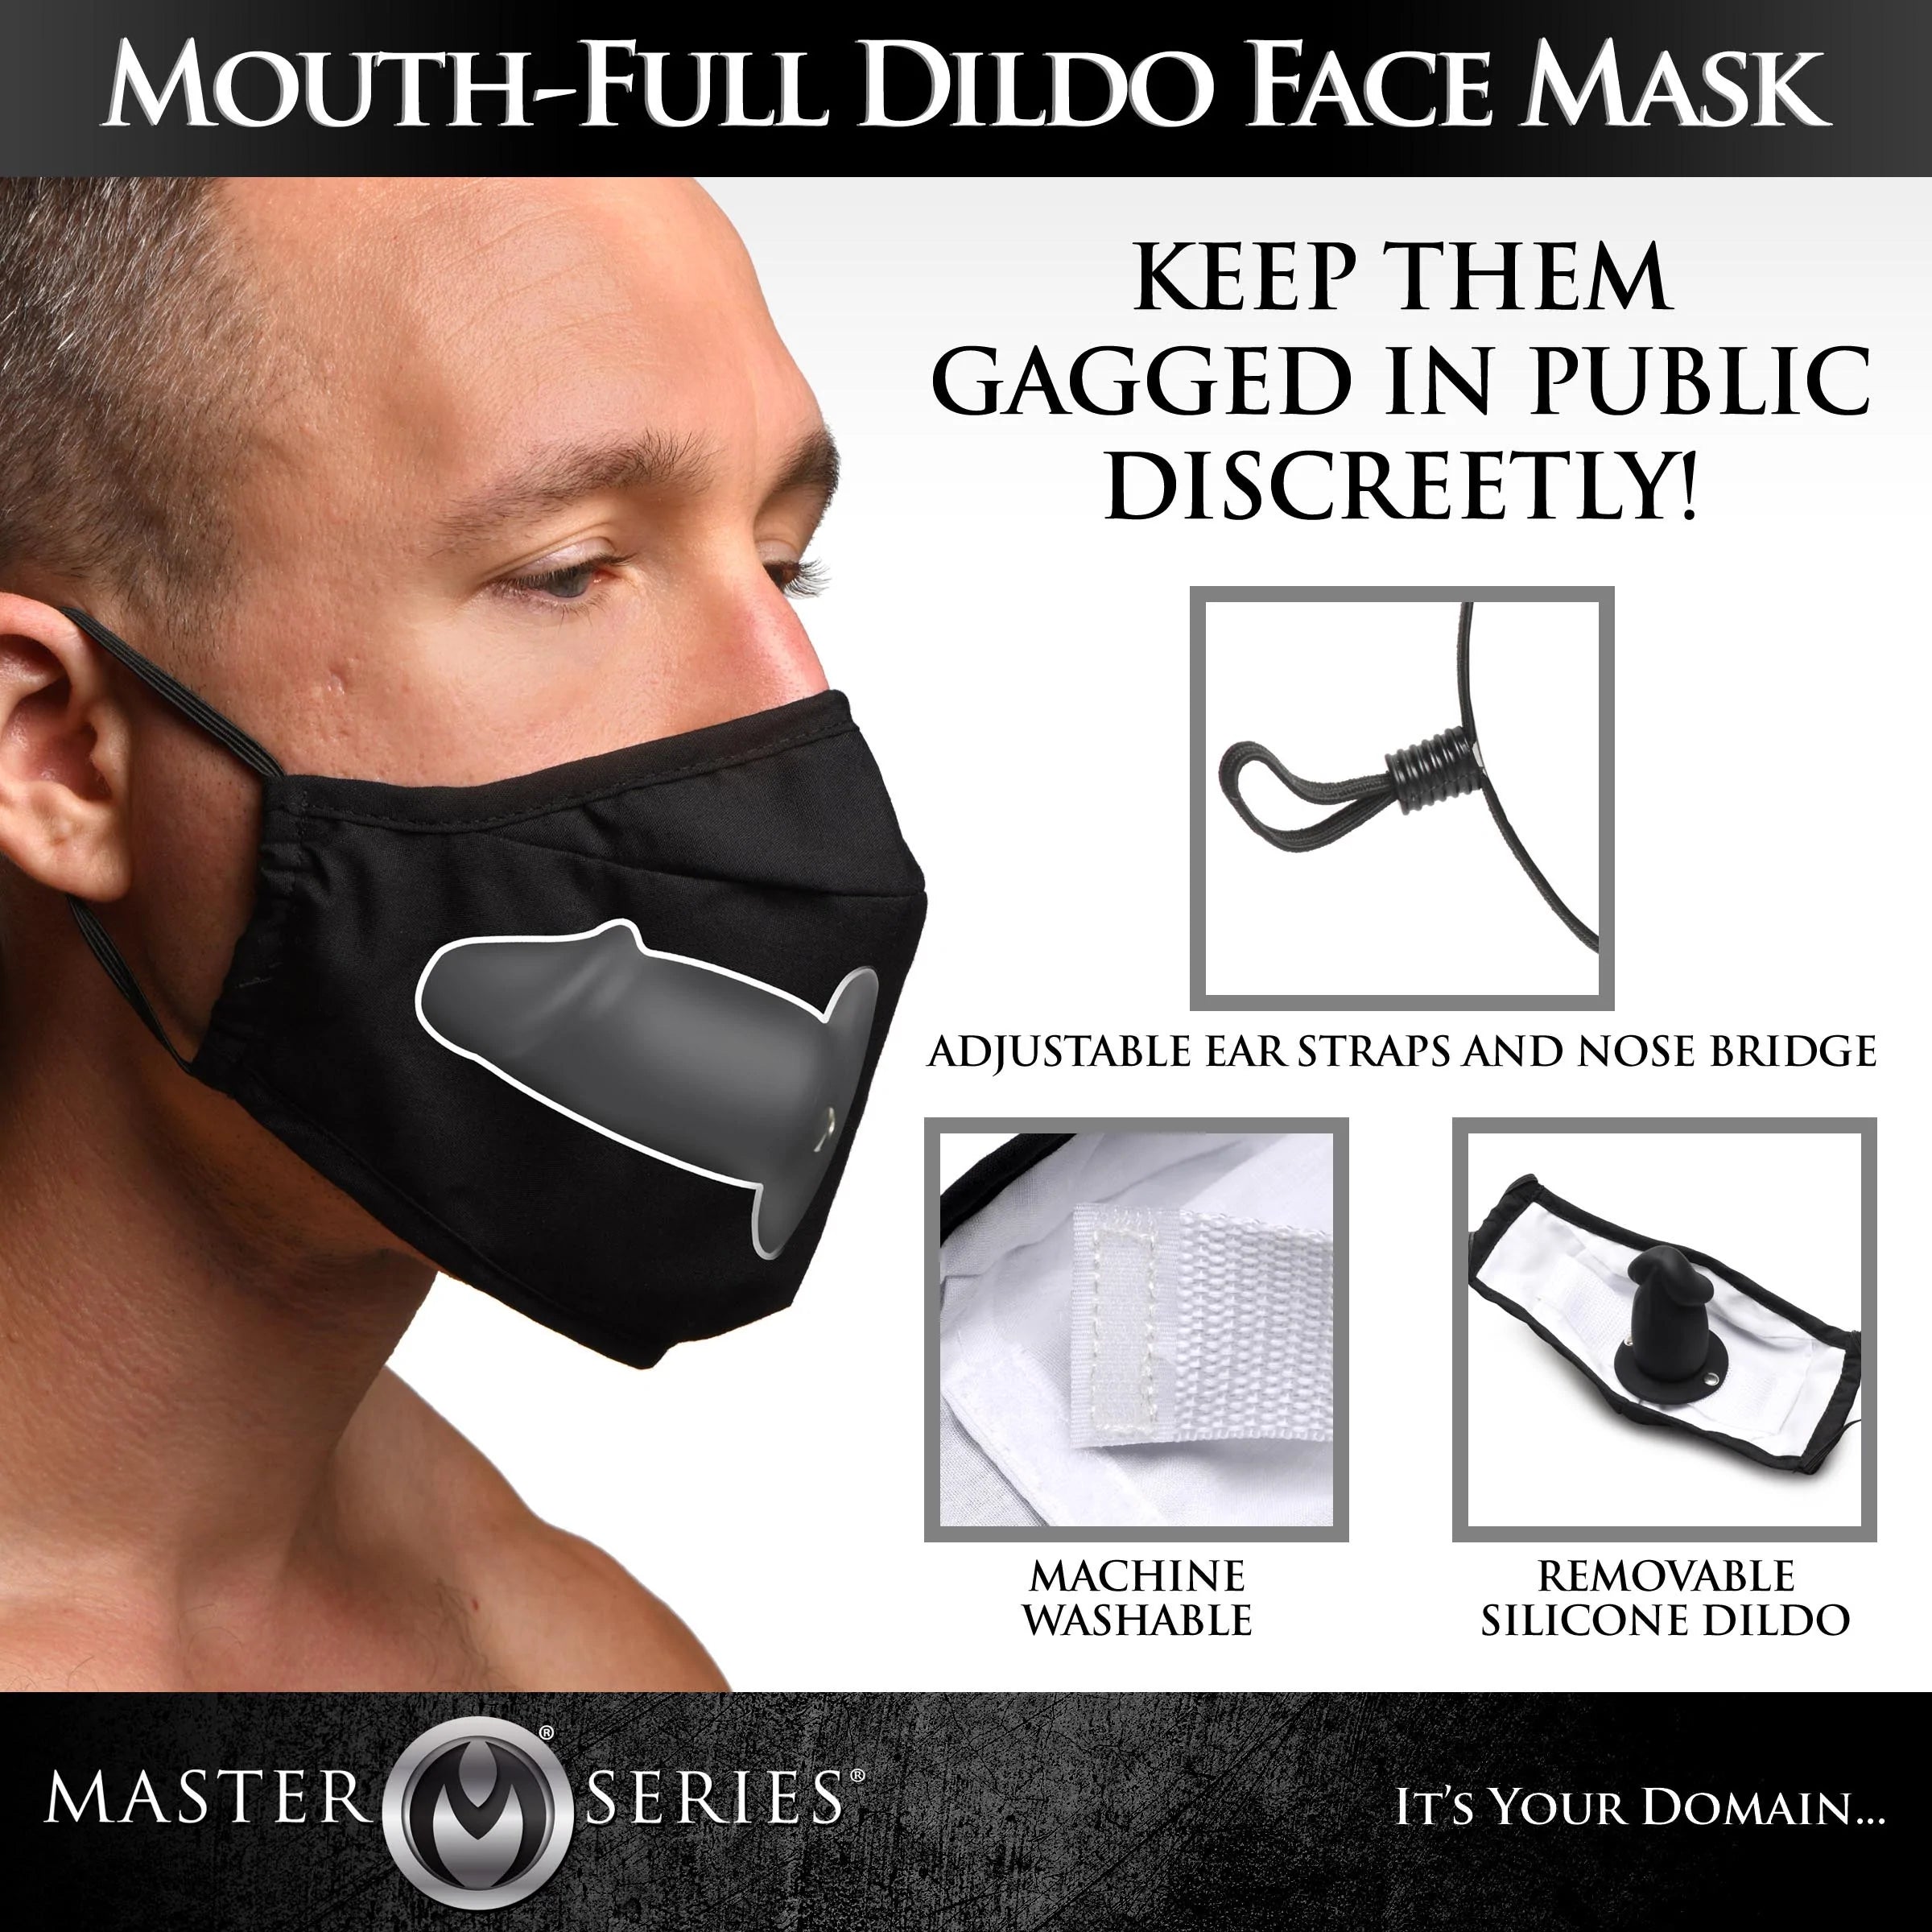 Mouth-Full Dildo Face Mask